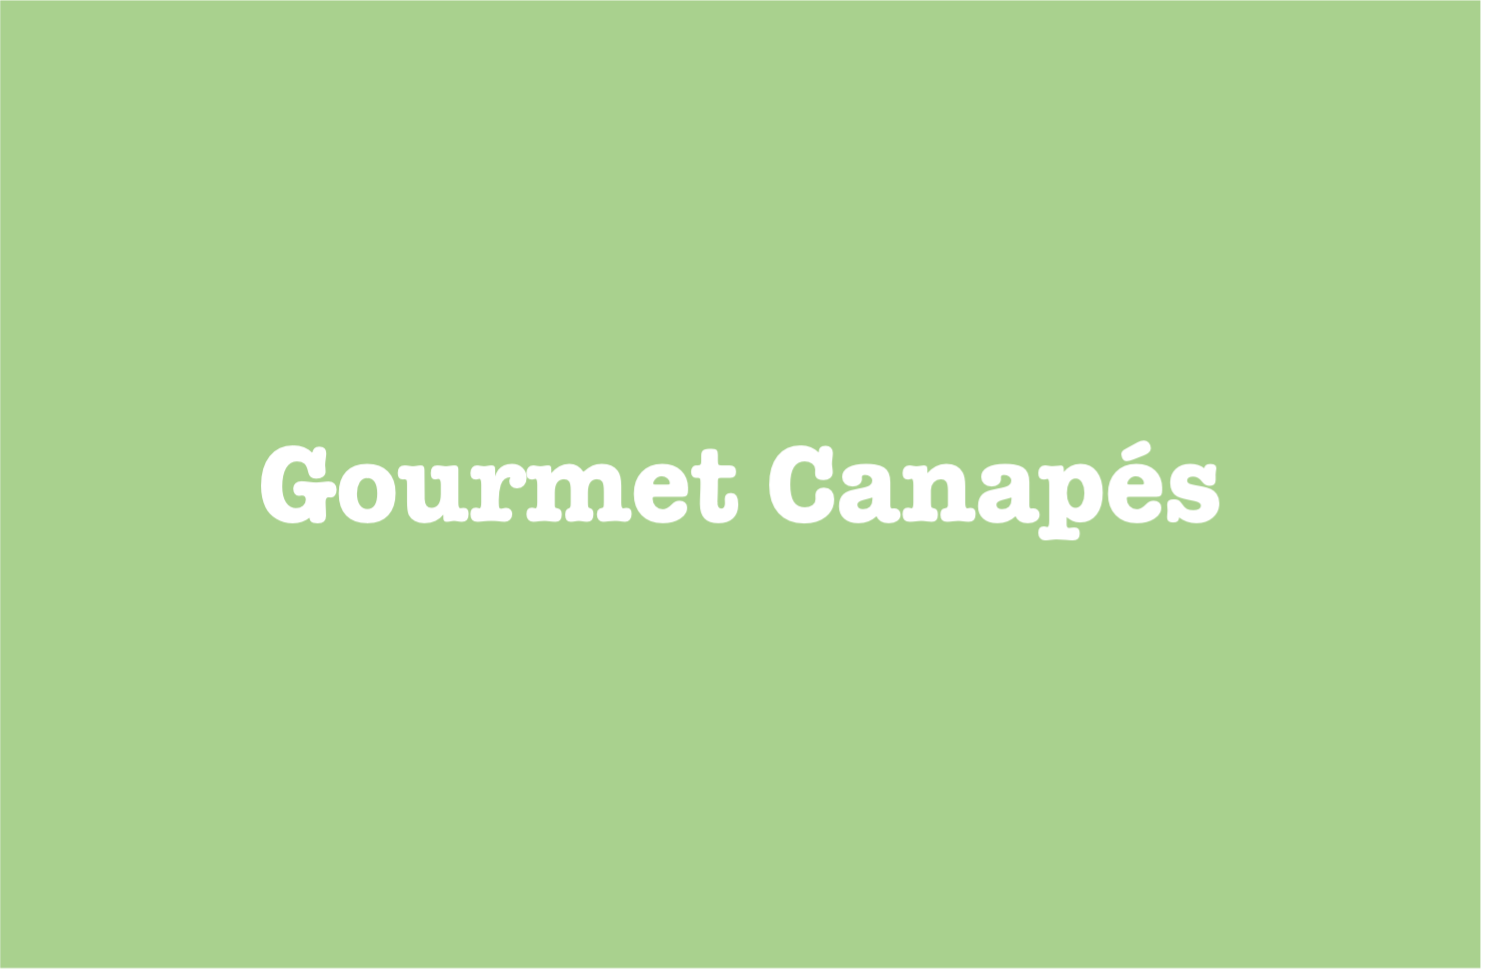 Gourmet Canapé Menu - Central Coast